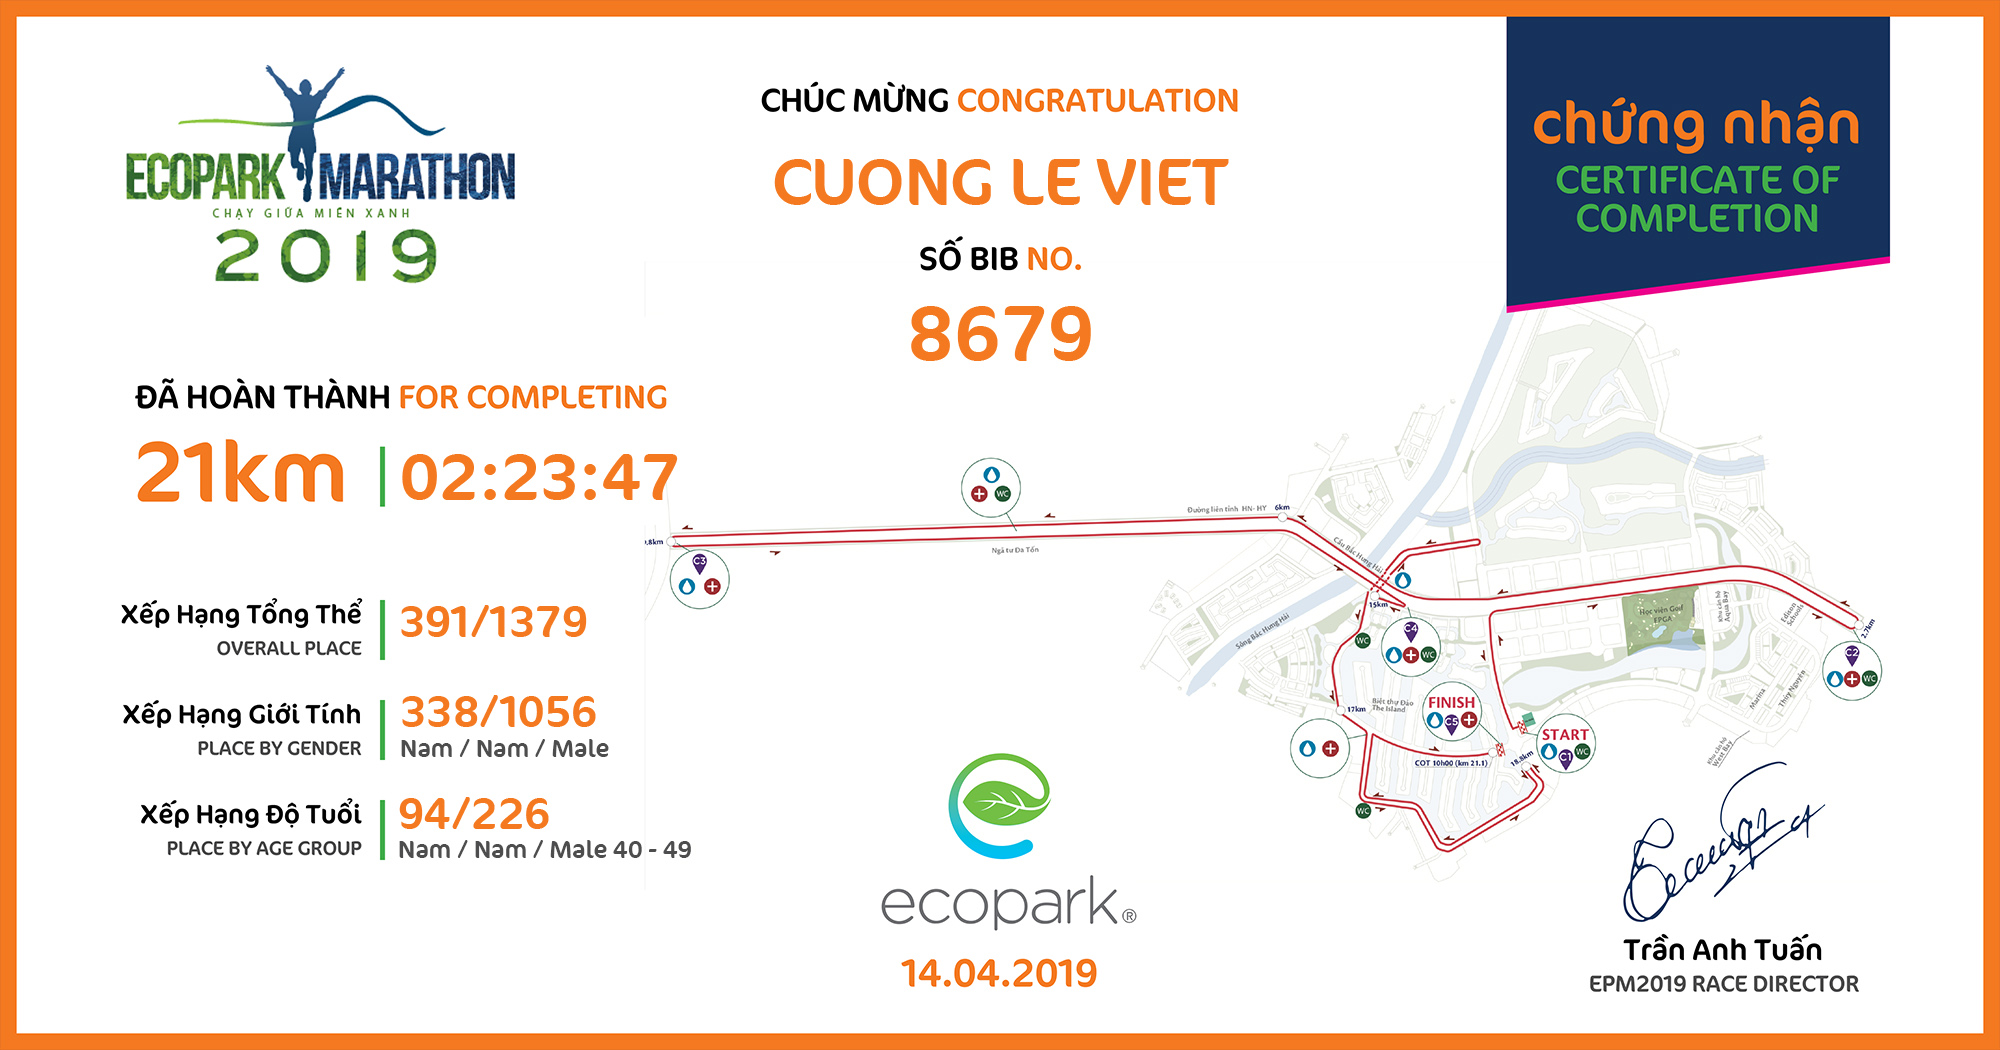 8679 - Cuong Le Viet